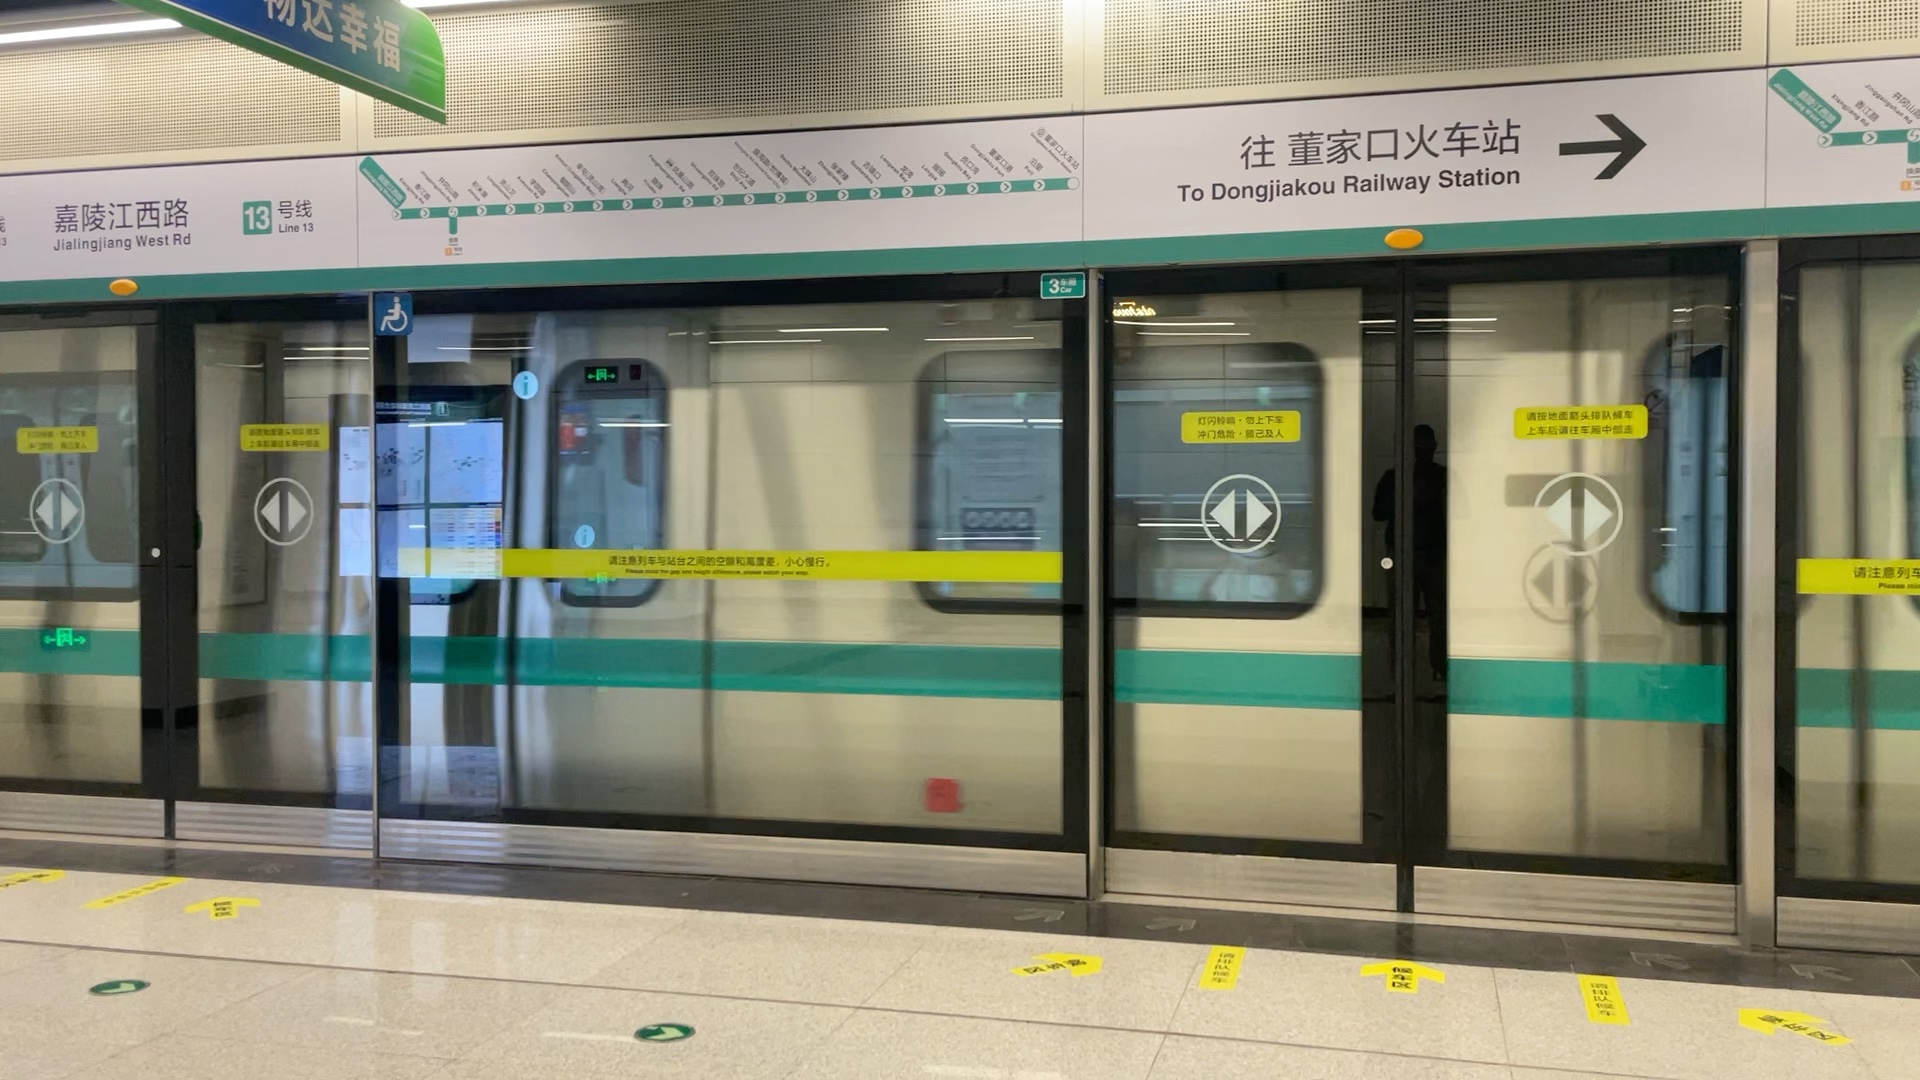 治江火车站图片